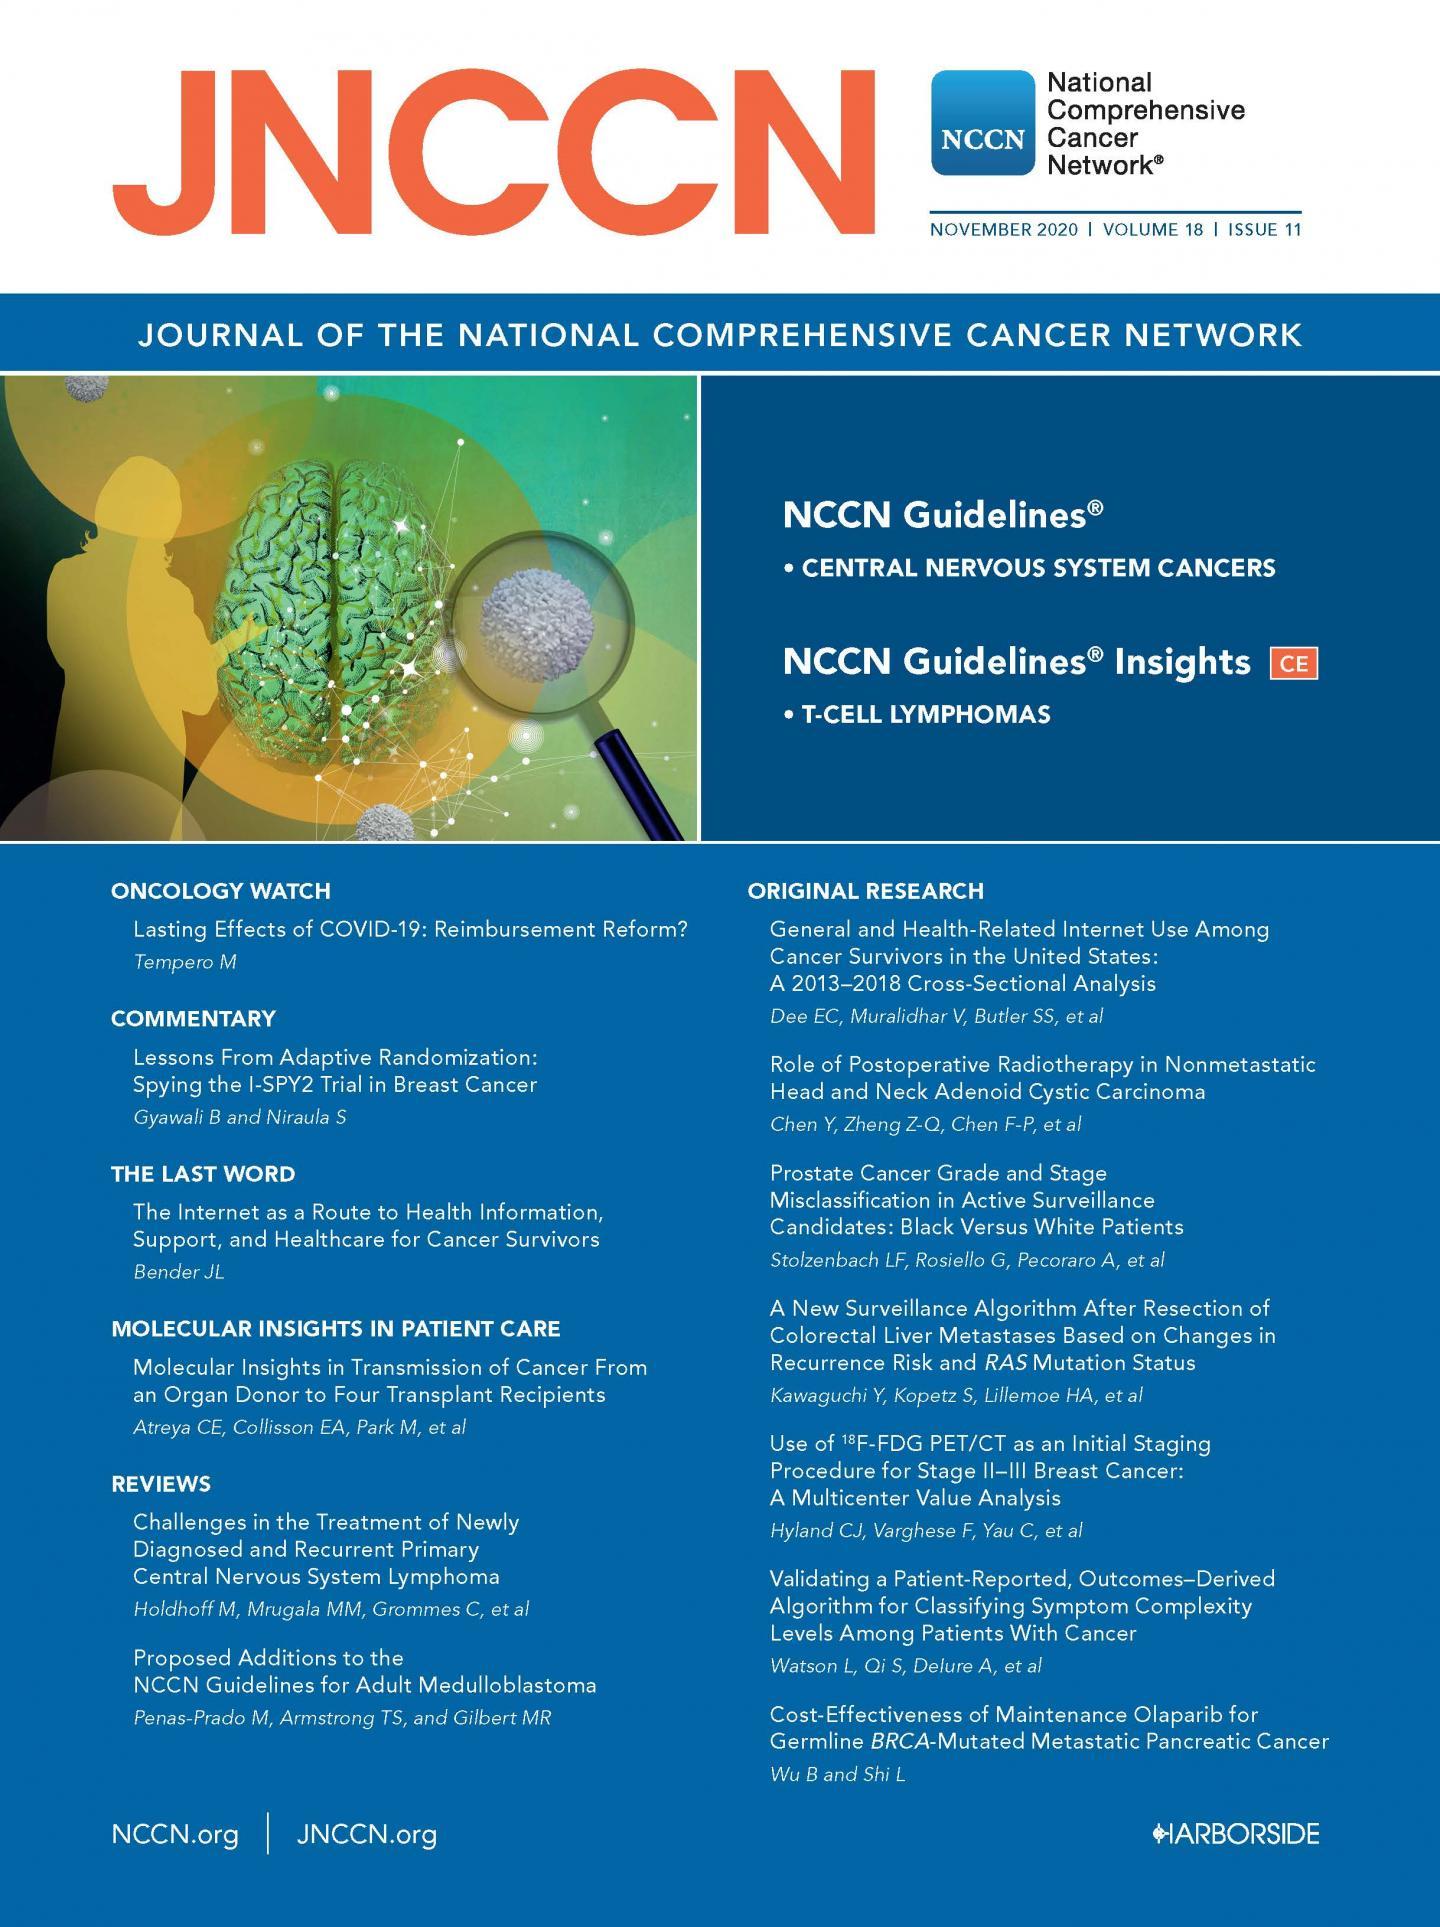 JNCCN研究评估了奥拉帕尼治疗转移性胰腺癌的成本效益